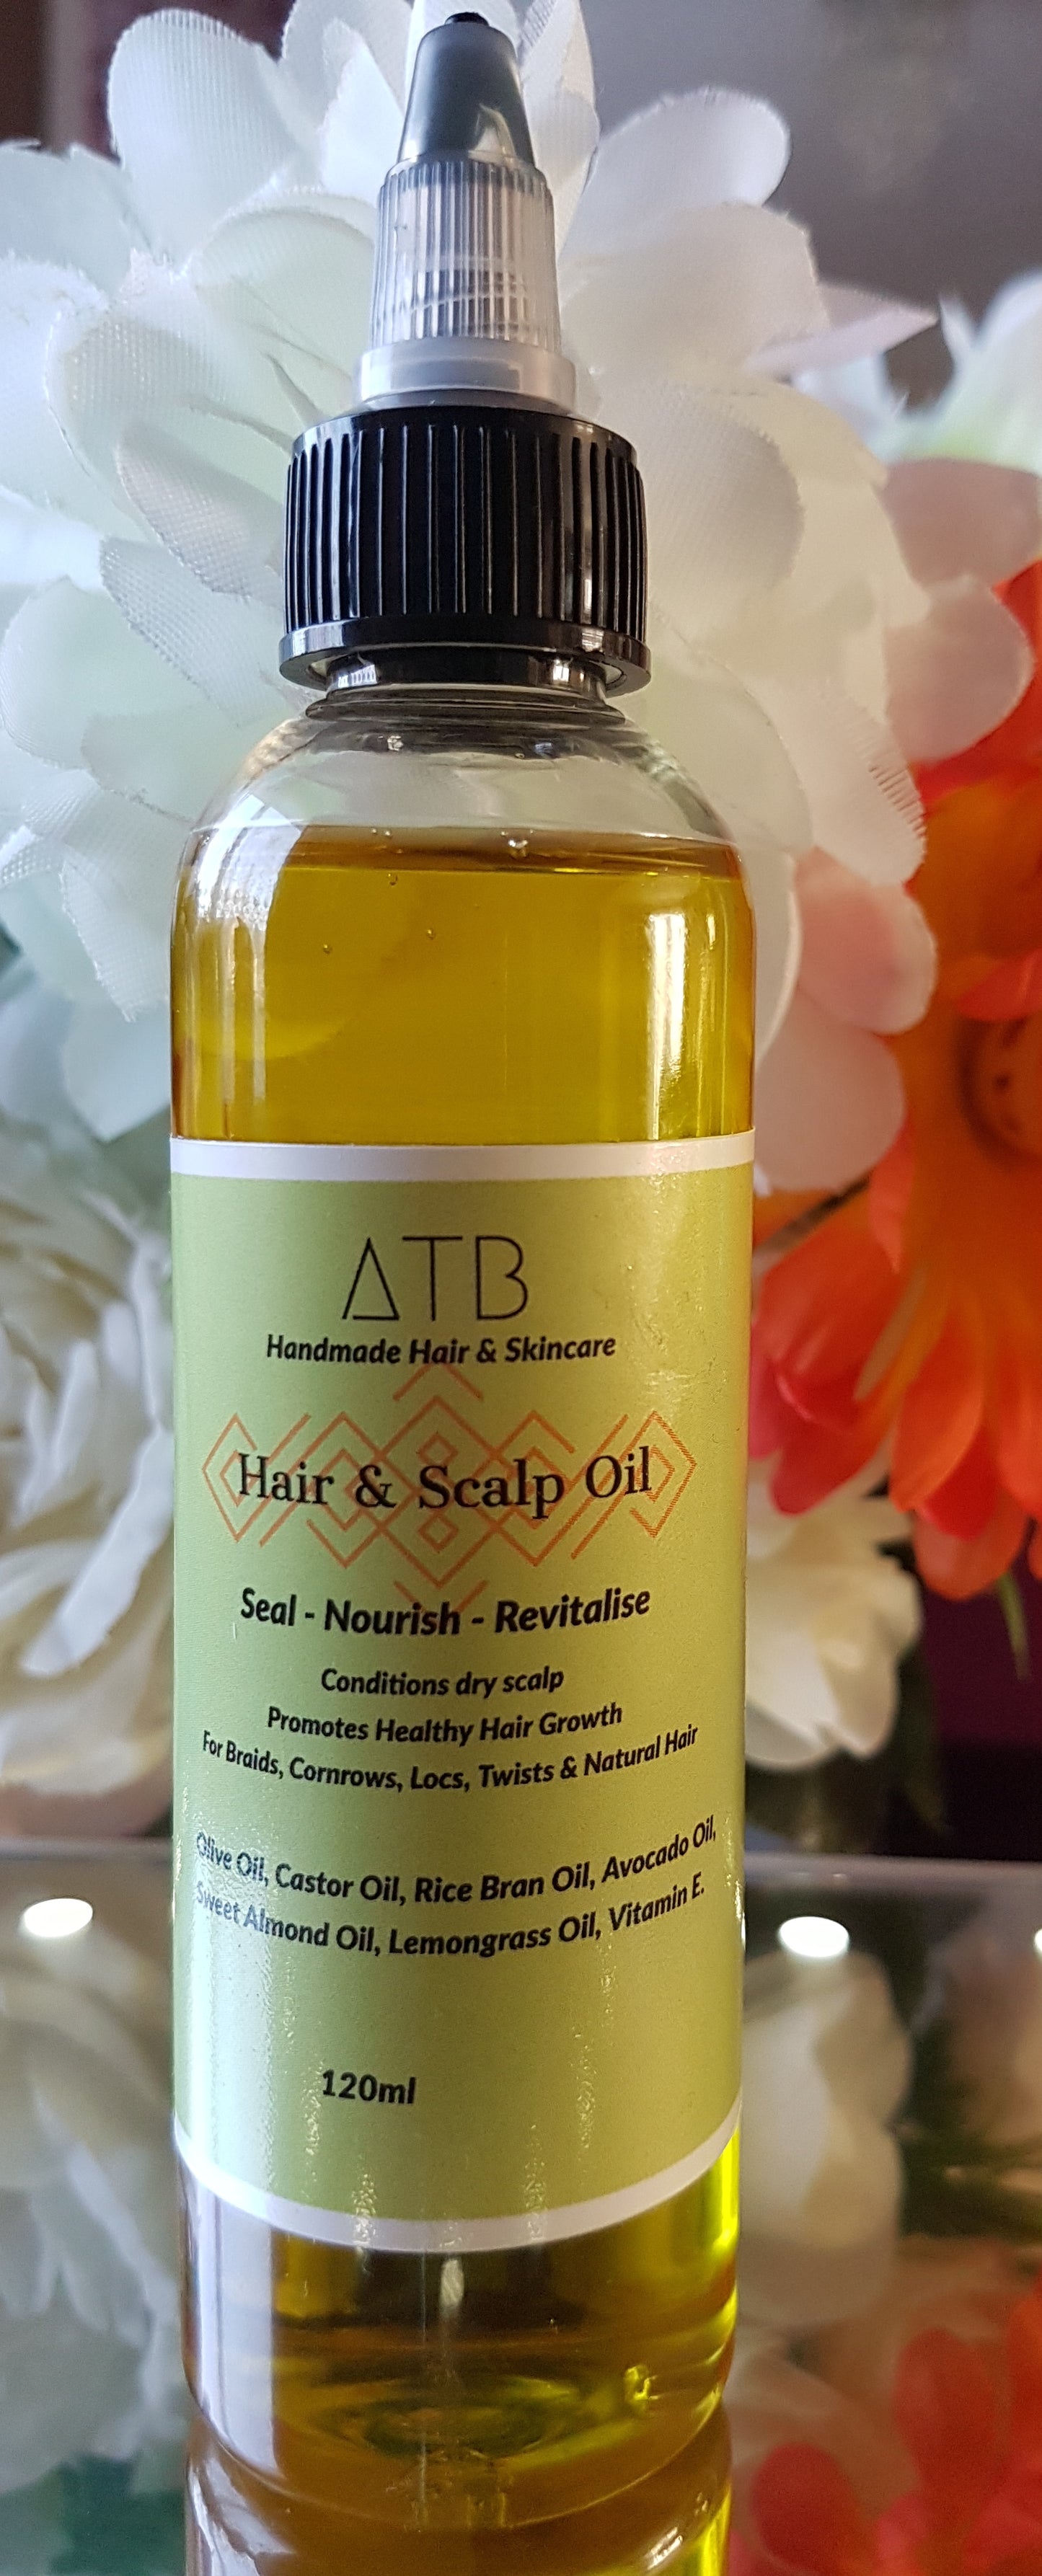 ATB hair and scalp oil for hair growth